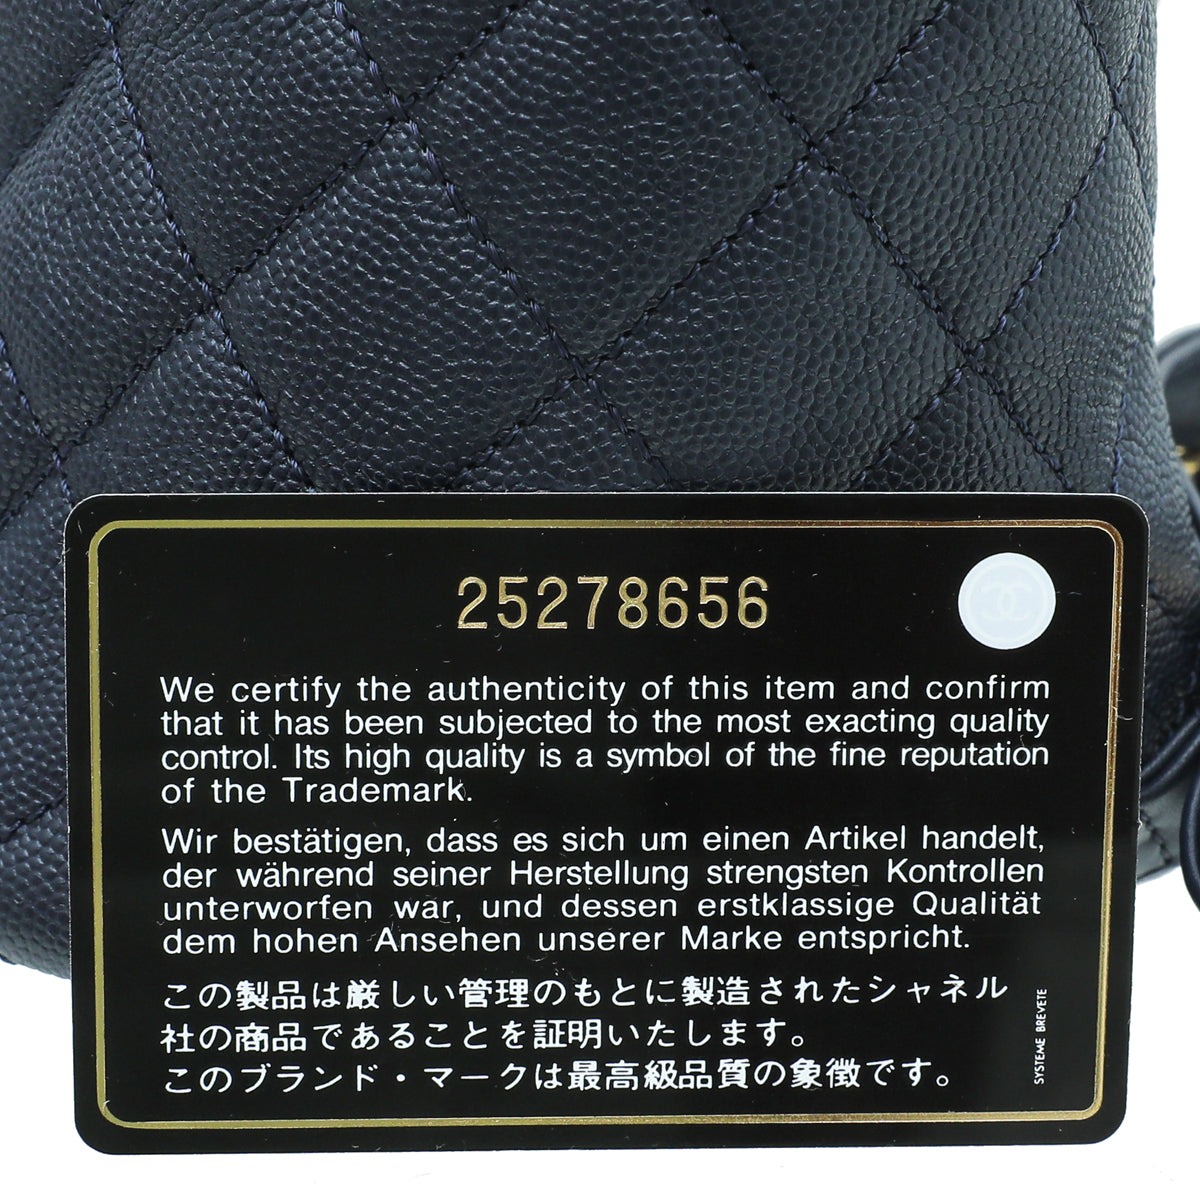 Chanel Navy Blue Filigree Backpack Bag